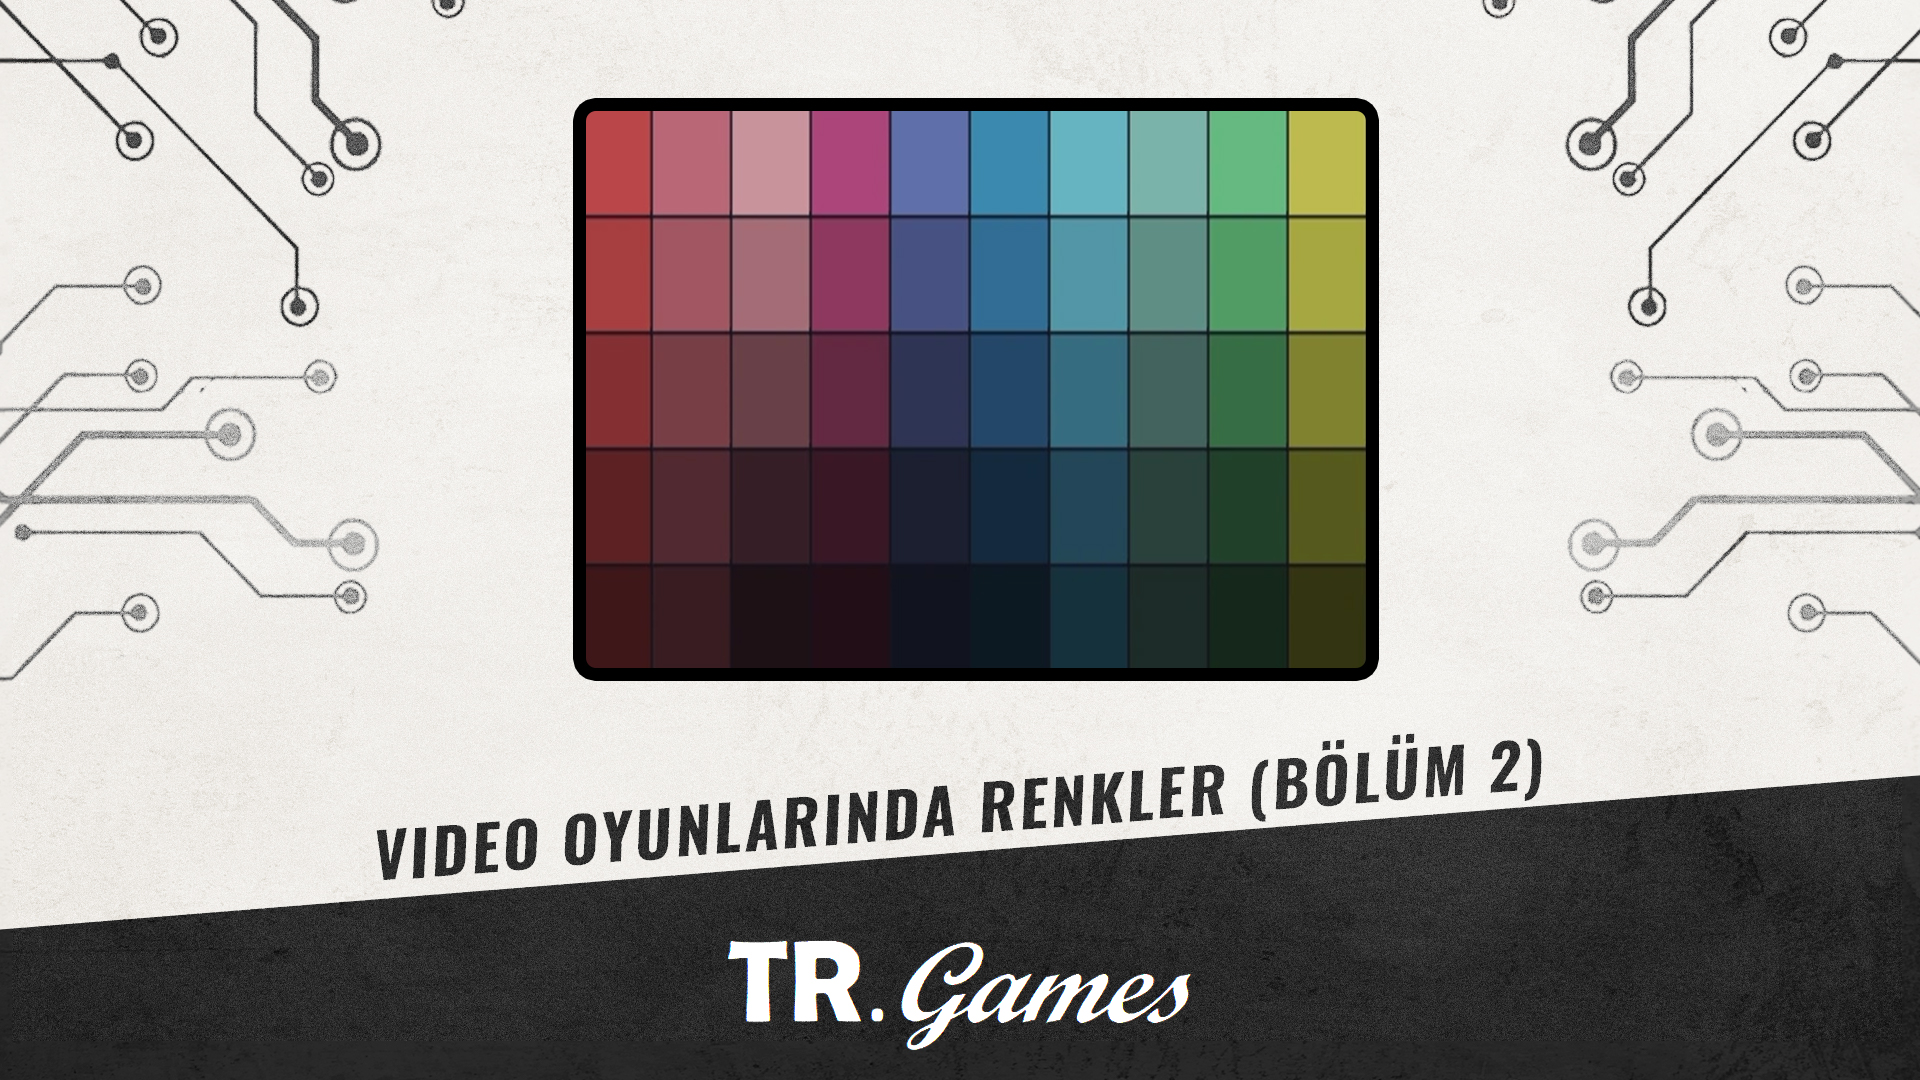 Video Oyunlarında Renkler Bölüm 2